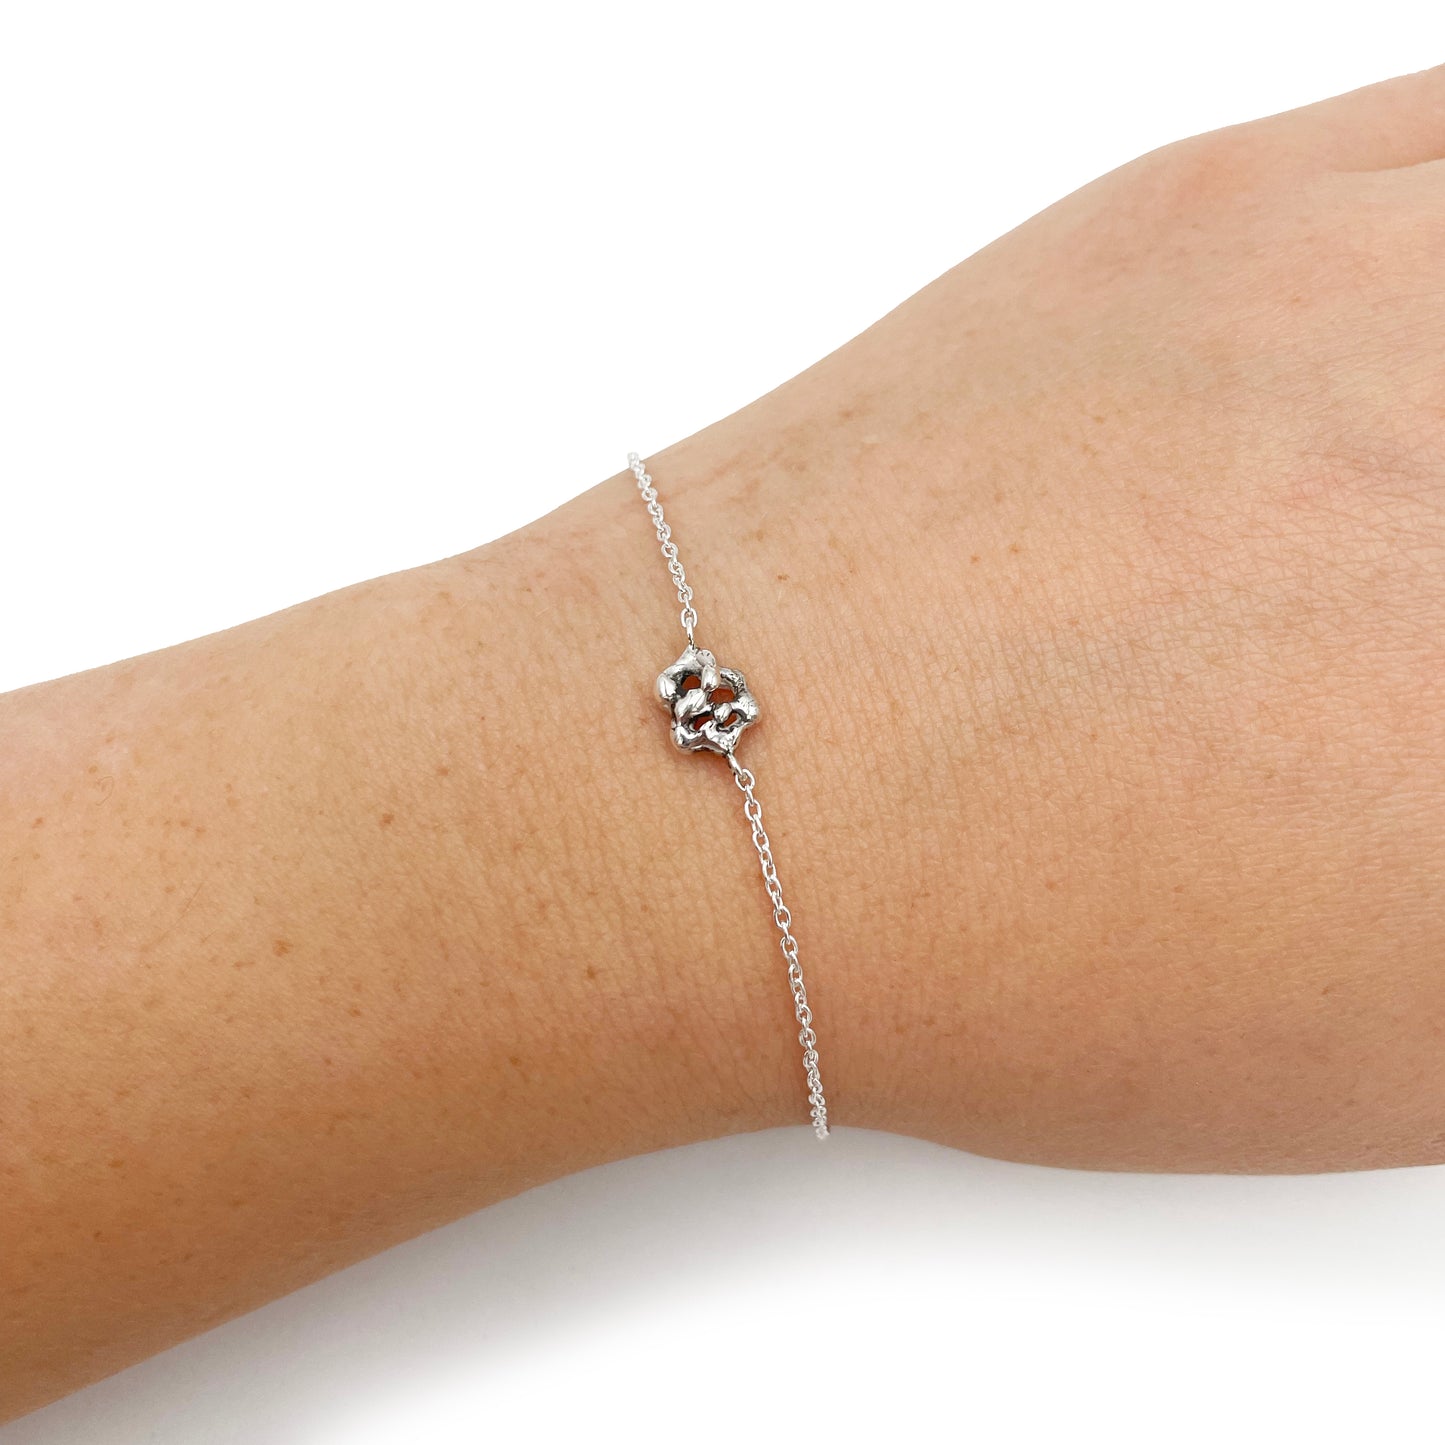 Asteria Chain Bracelet - Dainty Chain Bracelet - Designer Jewelry - Sterling Silver Chain Bracelet - Free Form - Cute Silver Bracelet